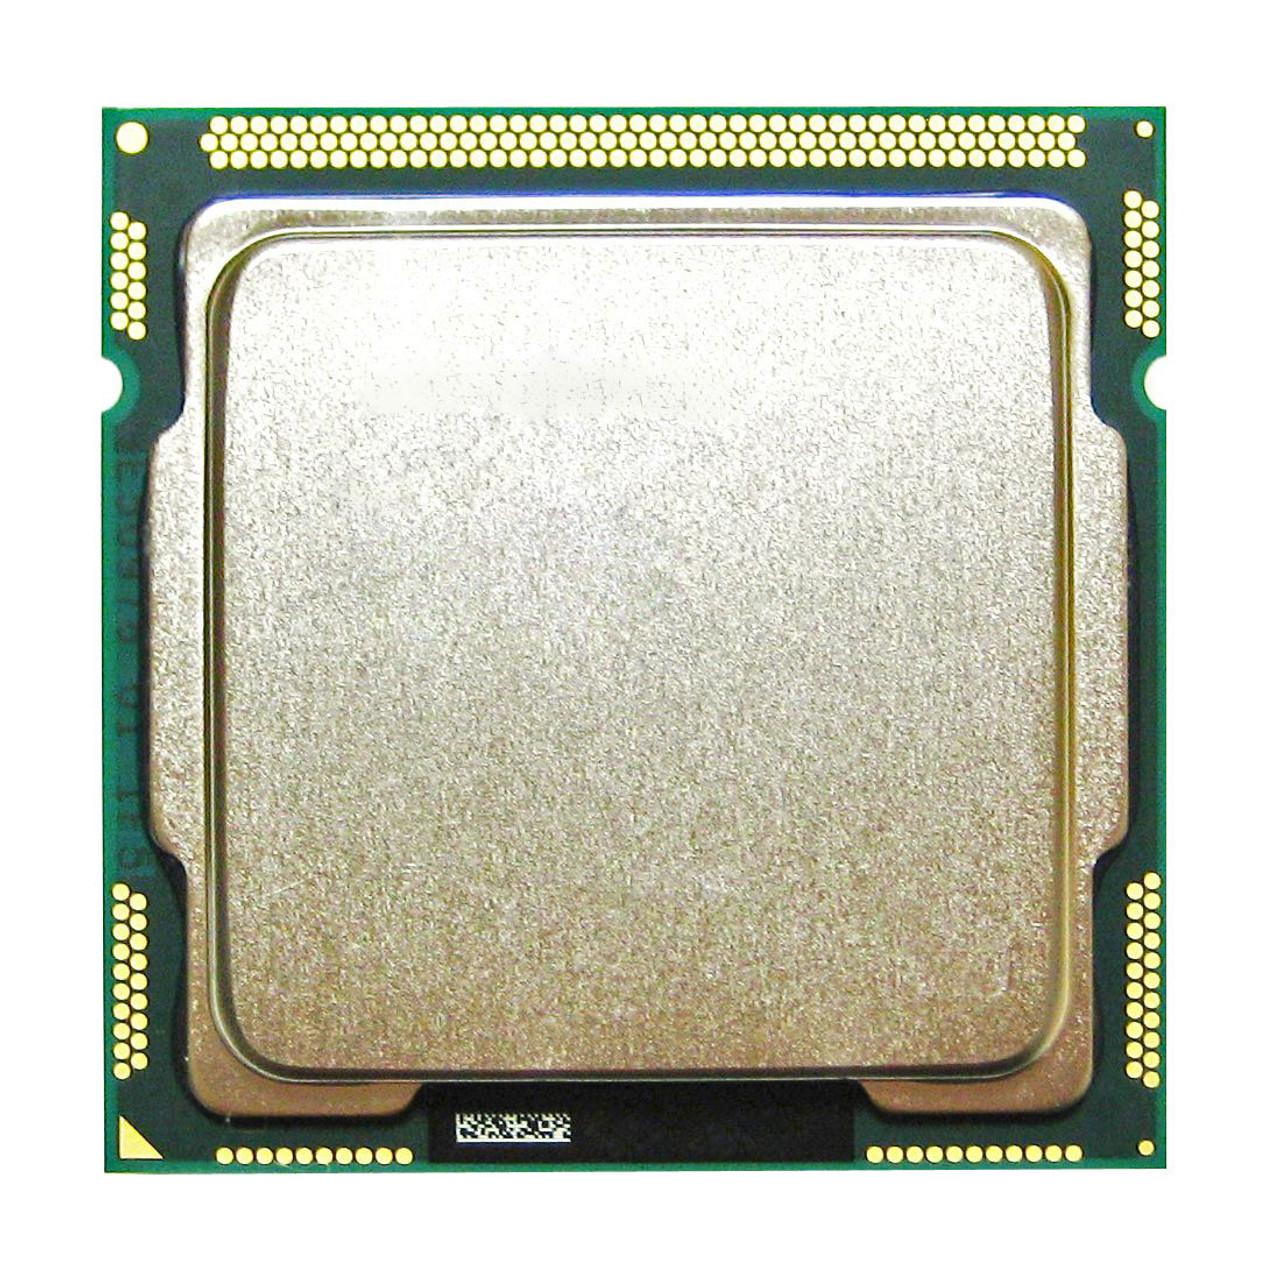 SLBTM Intel Core i5-680 Dual-Core 3.60GHz 2.50GT/s DMI 4MB L3 Cache Socket LGA1156 Desktop Processor